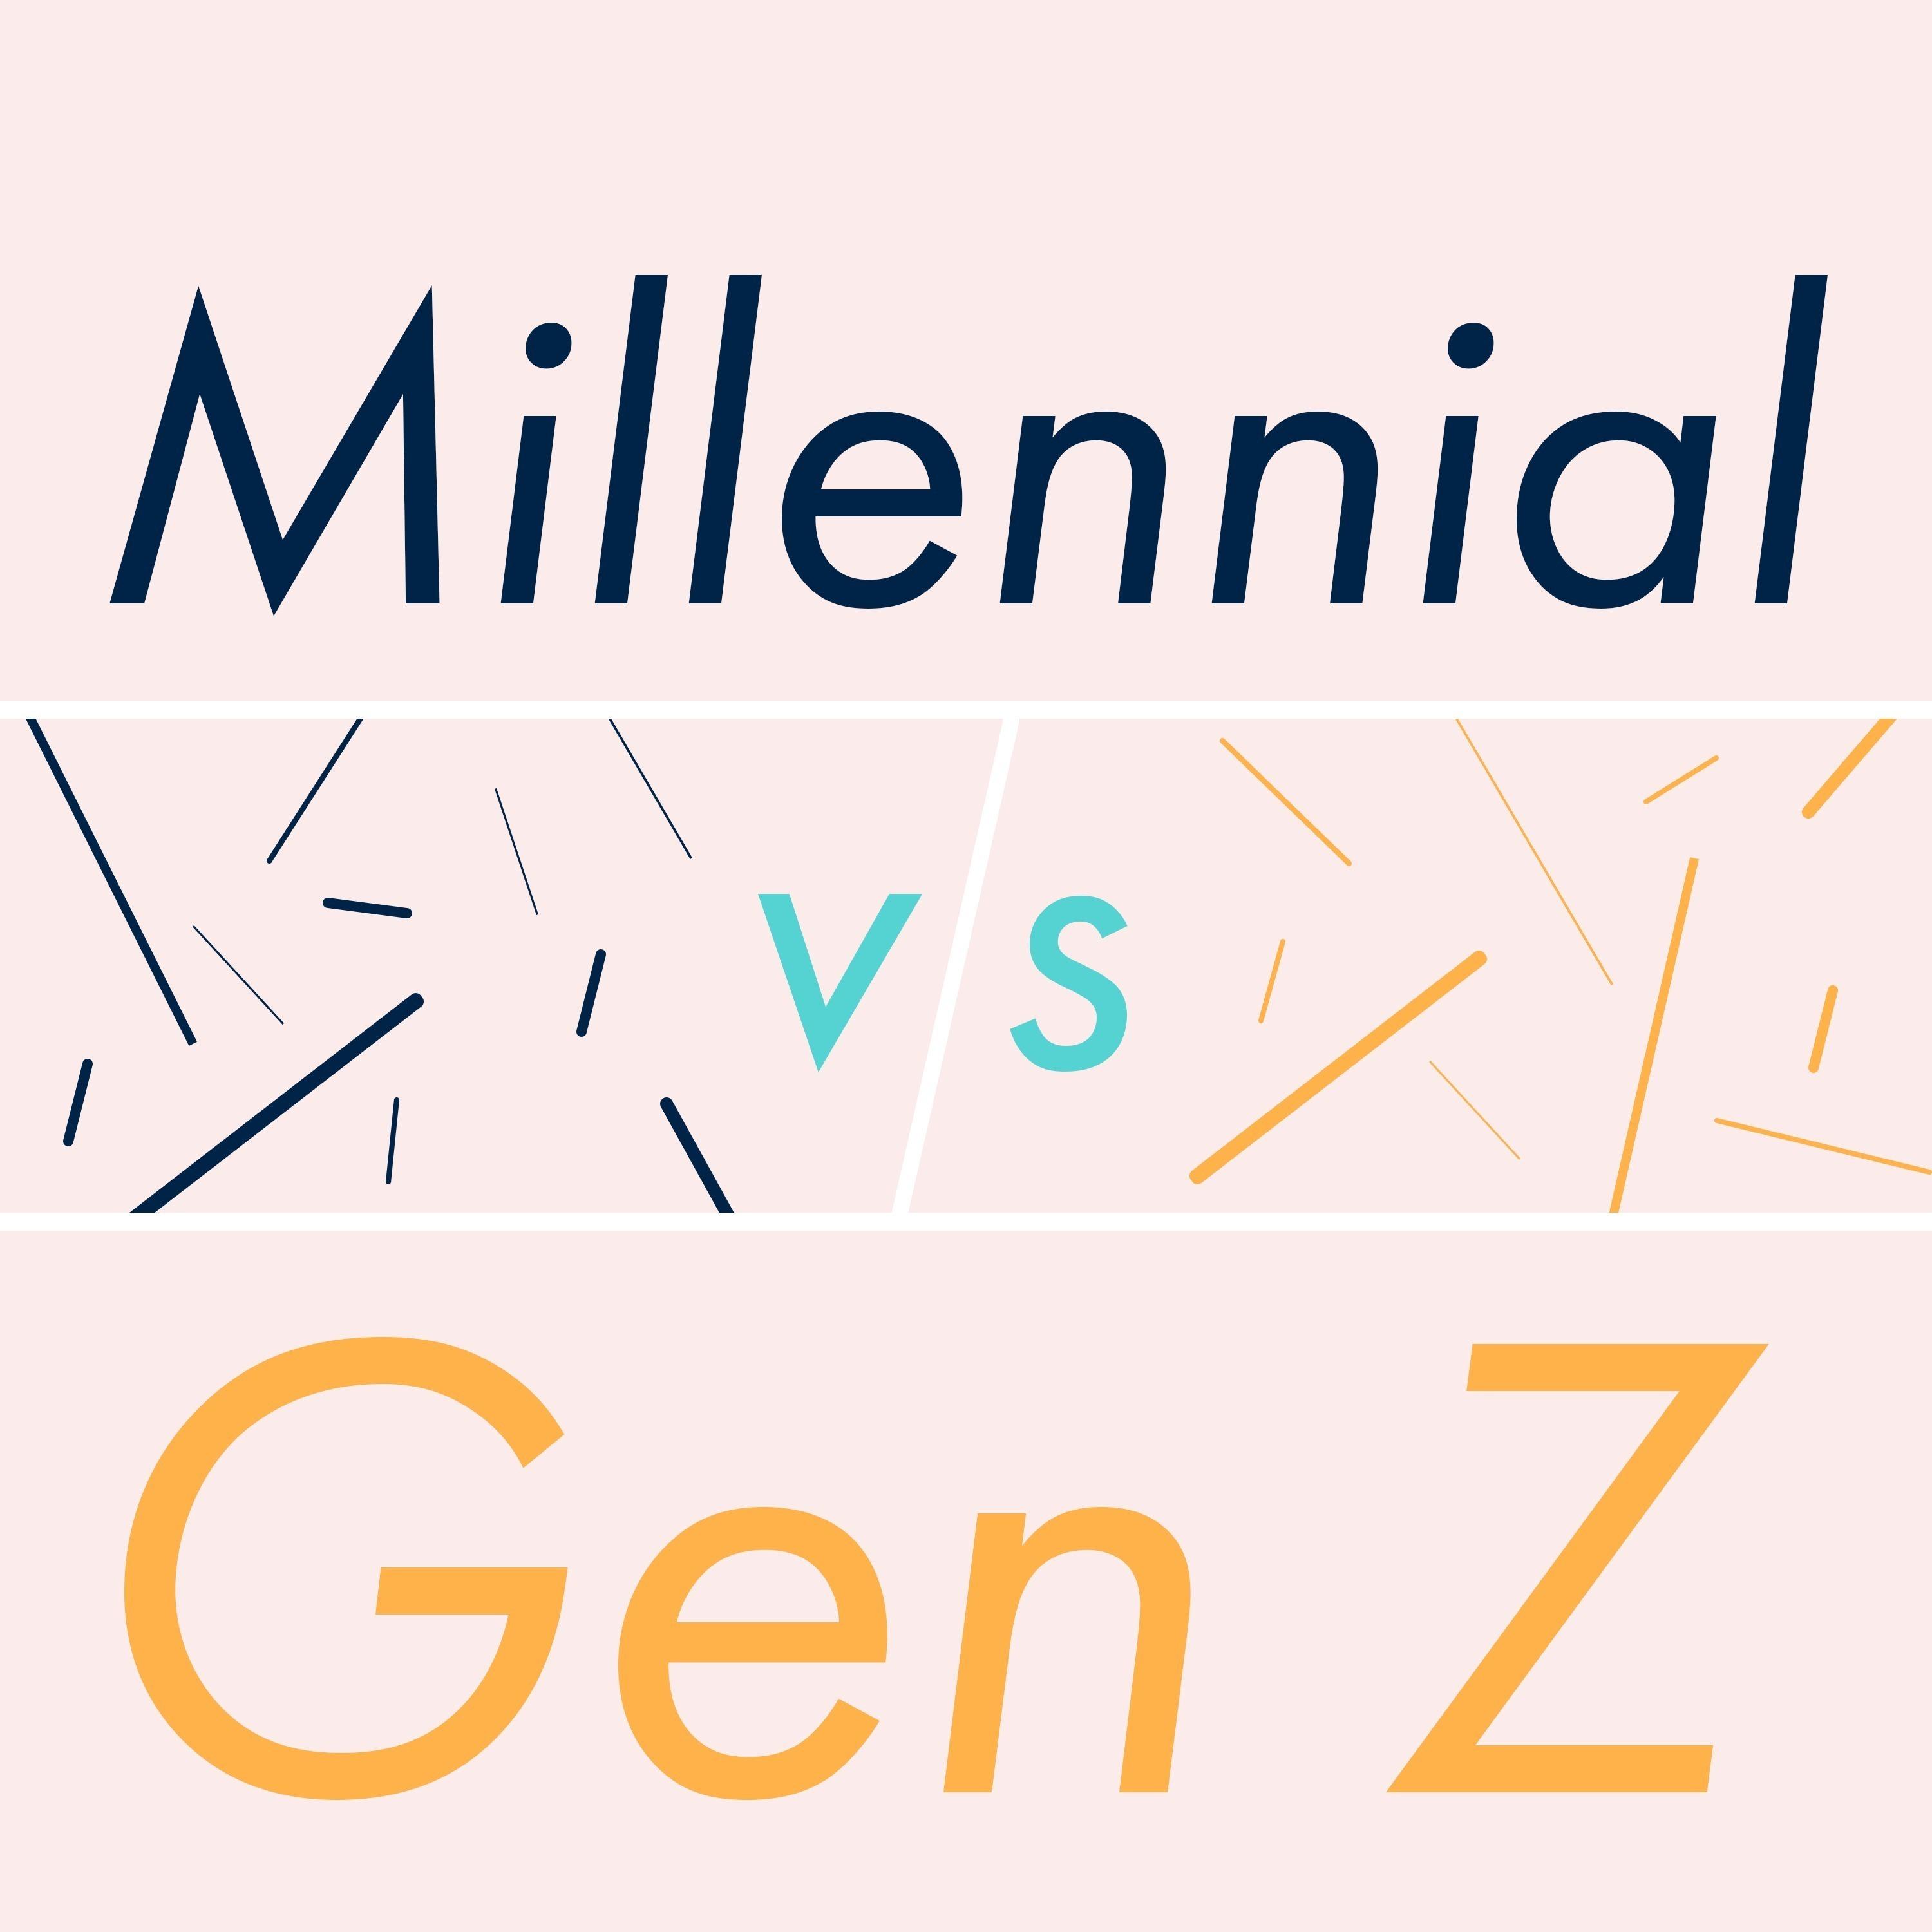 Millennial VS Gen Z